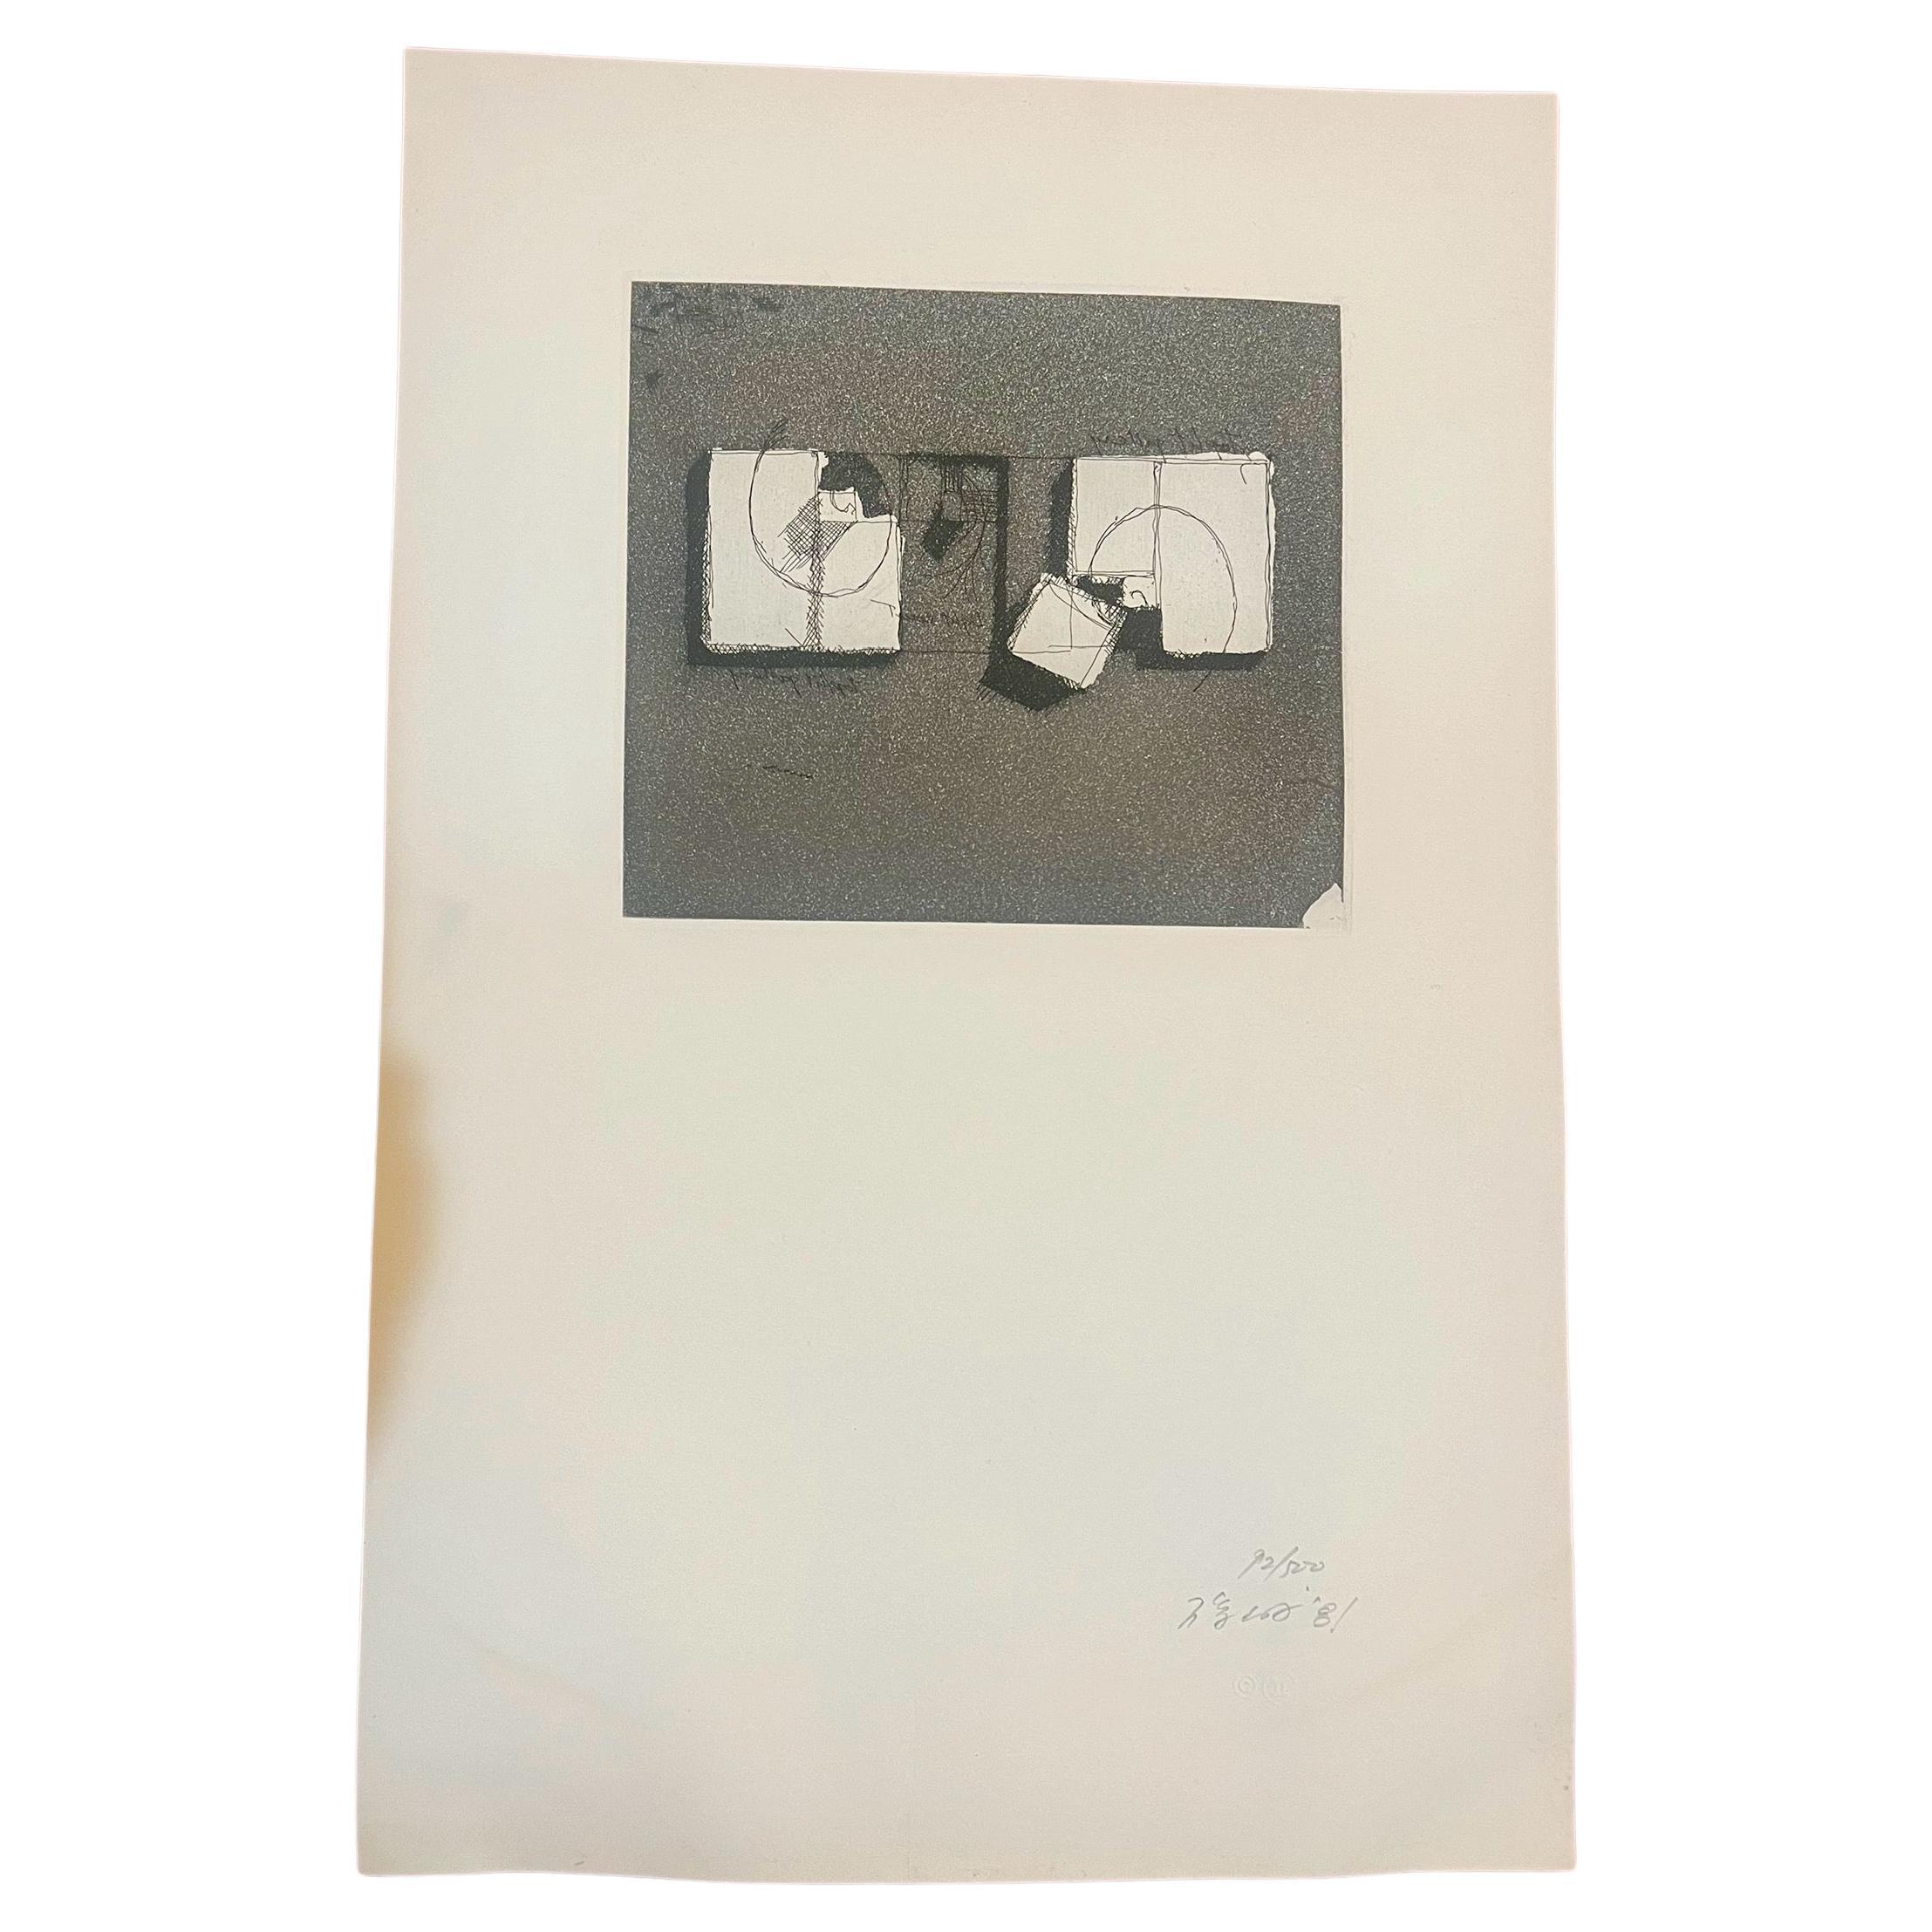 Eine unglaublich seltene ungerahmte Radierung , Aquatinta von Architekt Arat Isozaki , um 1981 , schönes Stück minimalistischer Kunst , signiert nummeriert und datiert eingebettet Papier sehr schön sauberen Zustand. schön gedruckt Papier aufgeführt